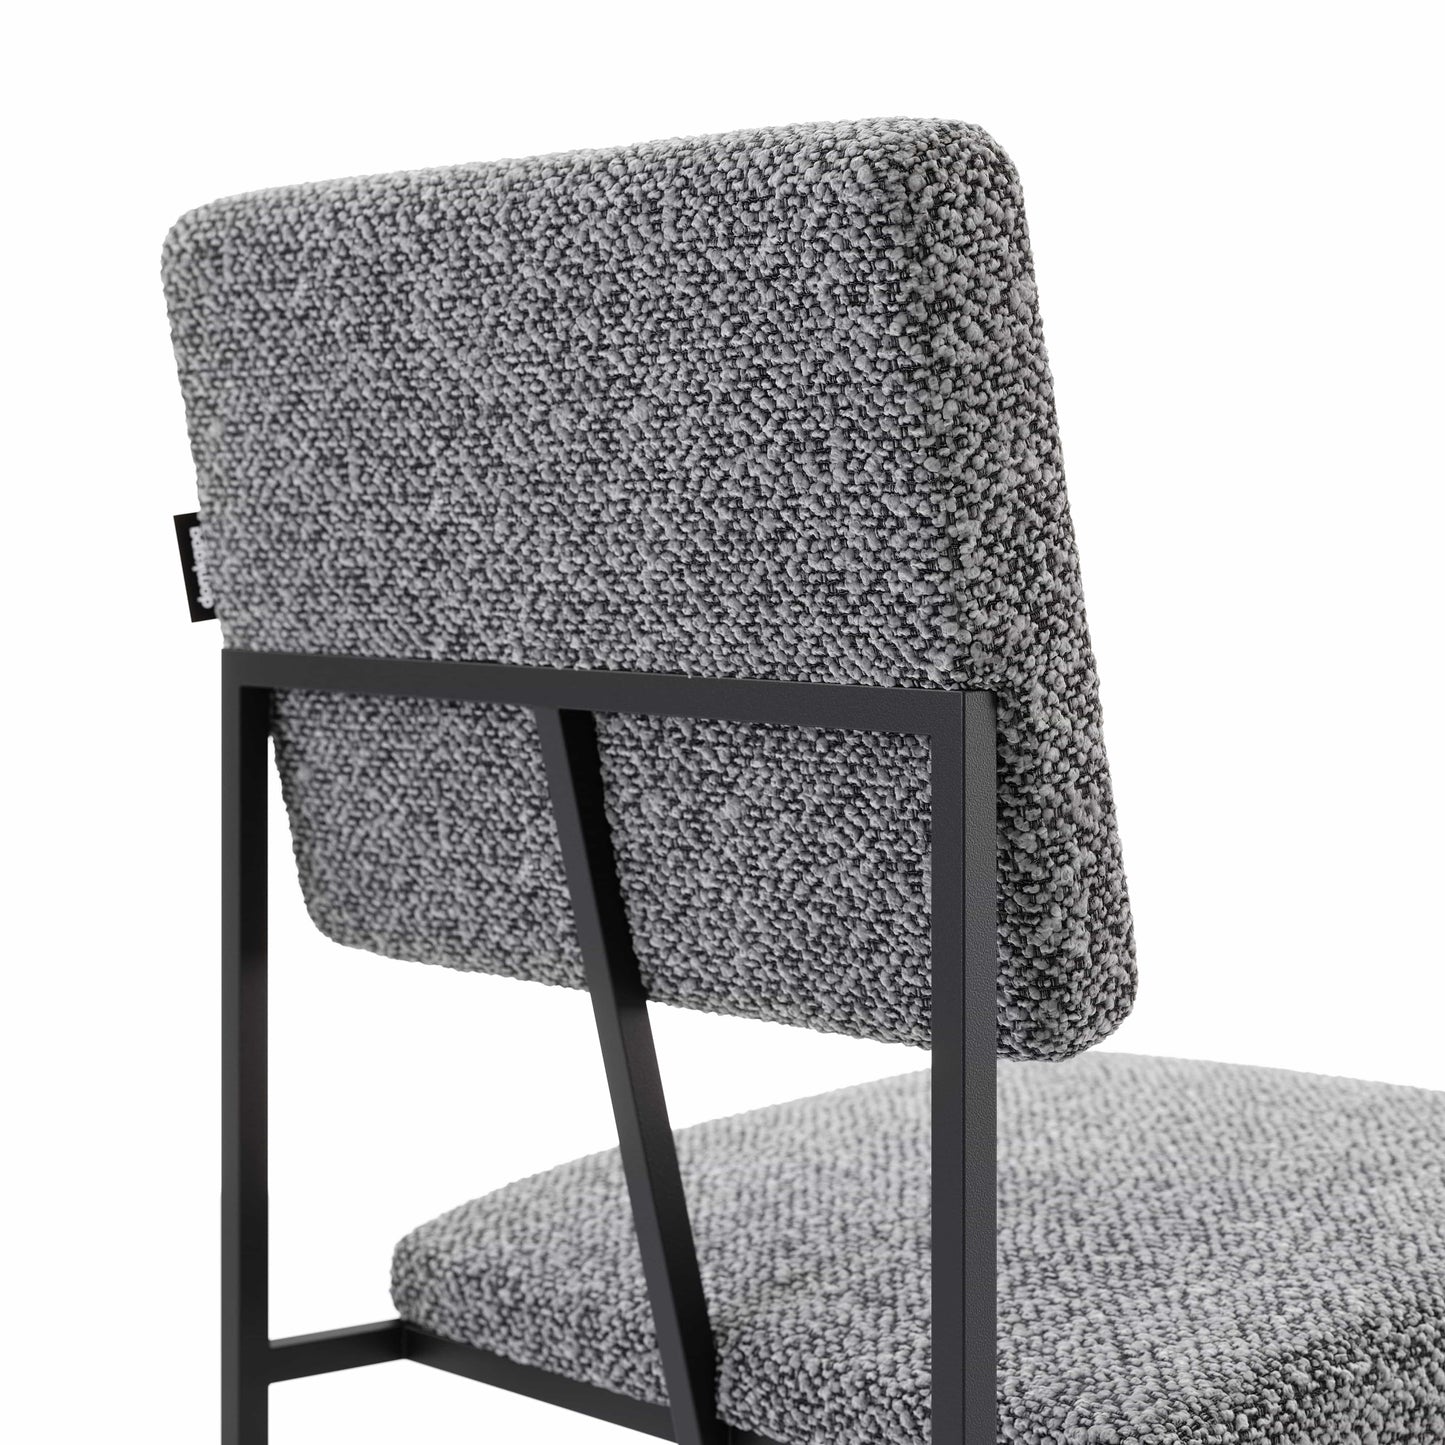 Domkapa Gram Chair by Domkapa- Velvet (Martindale: 60,000)